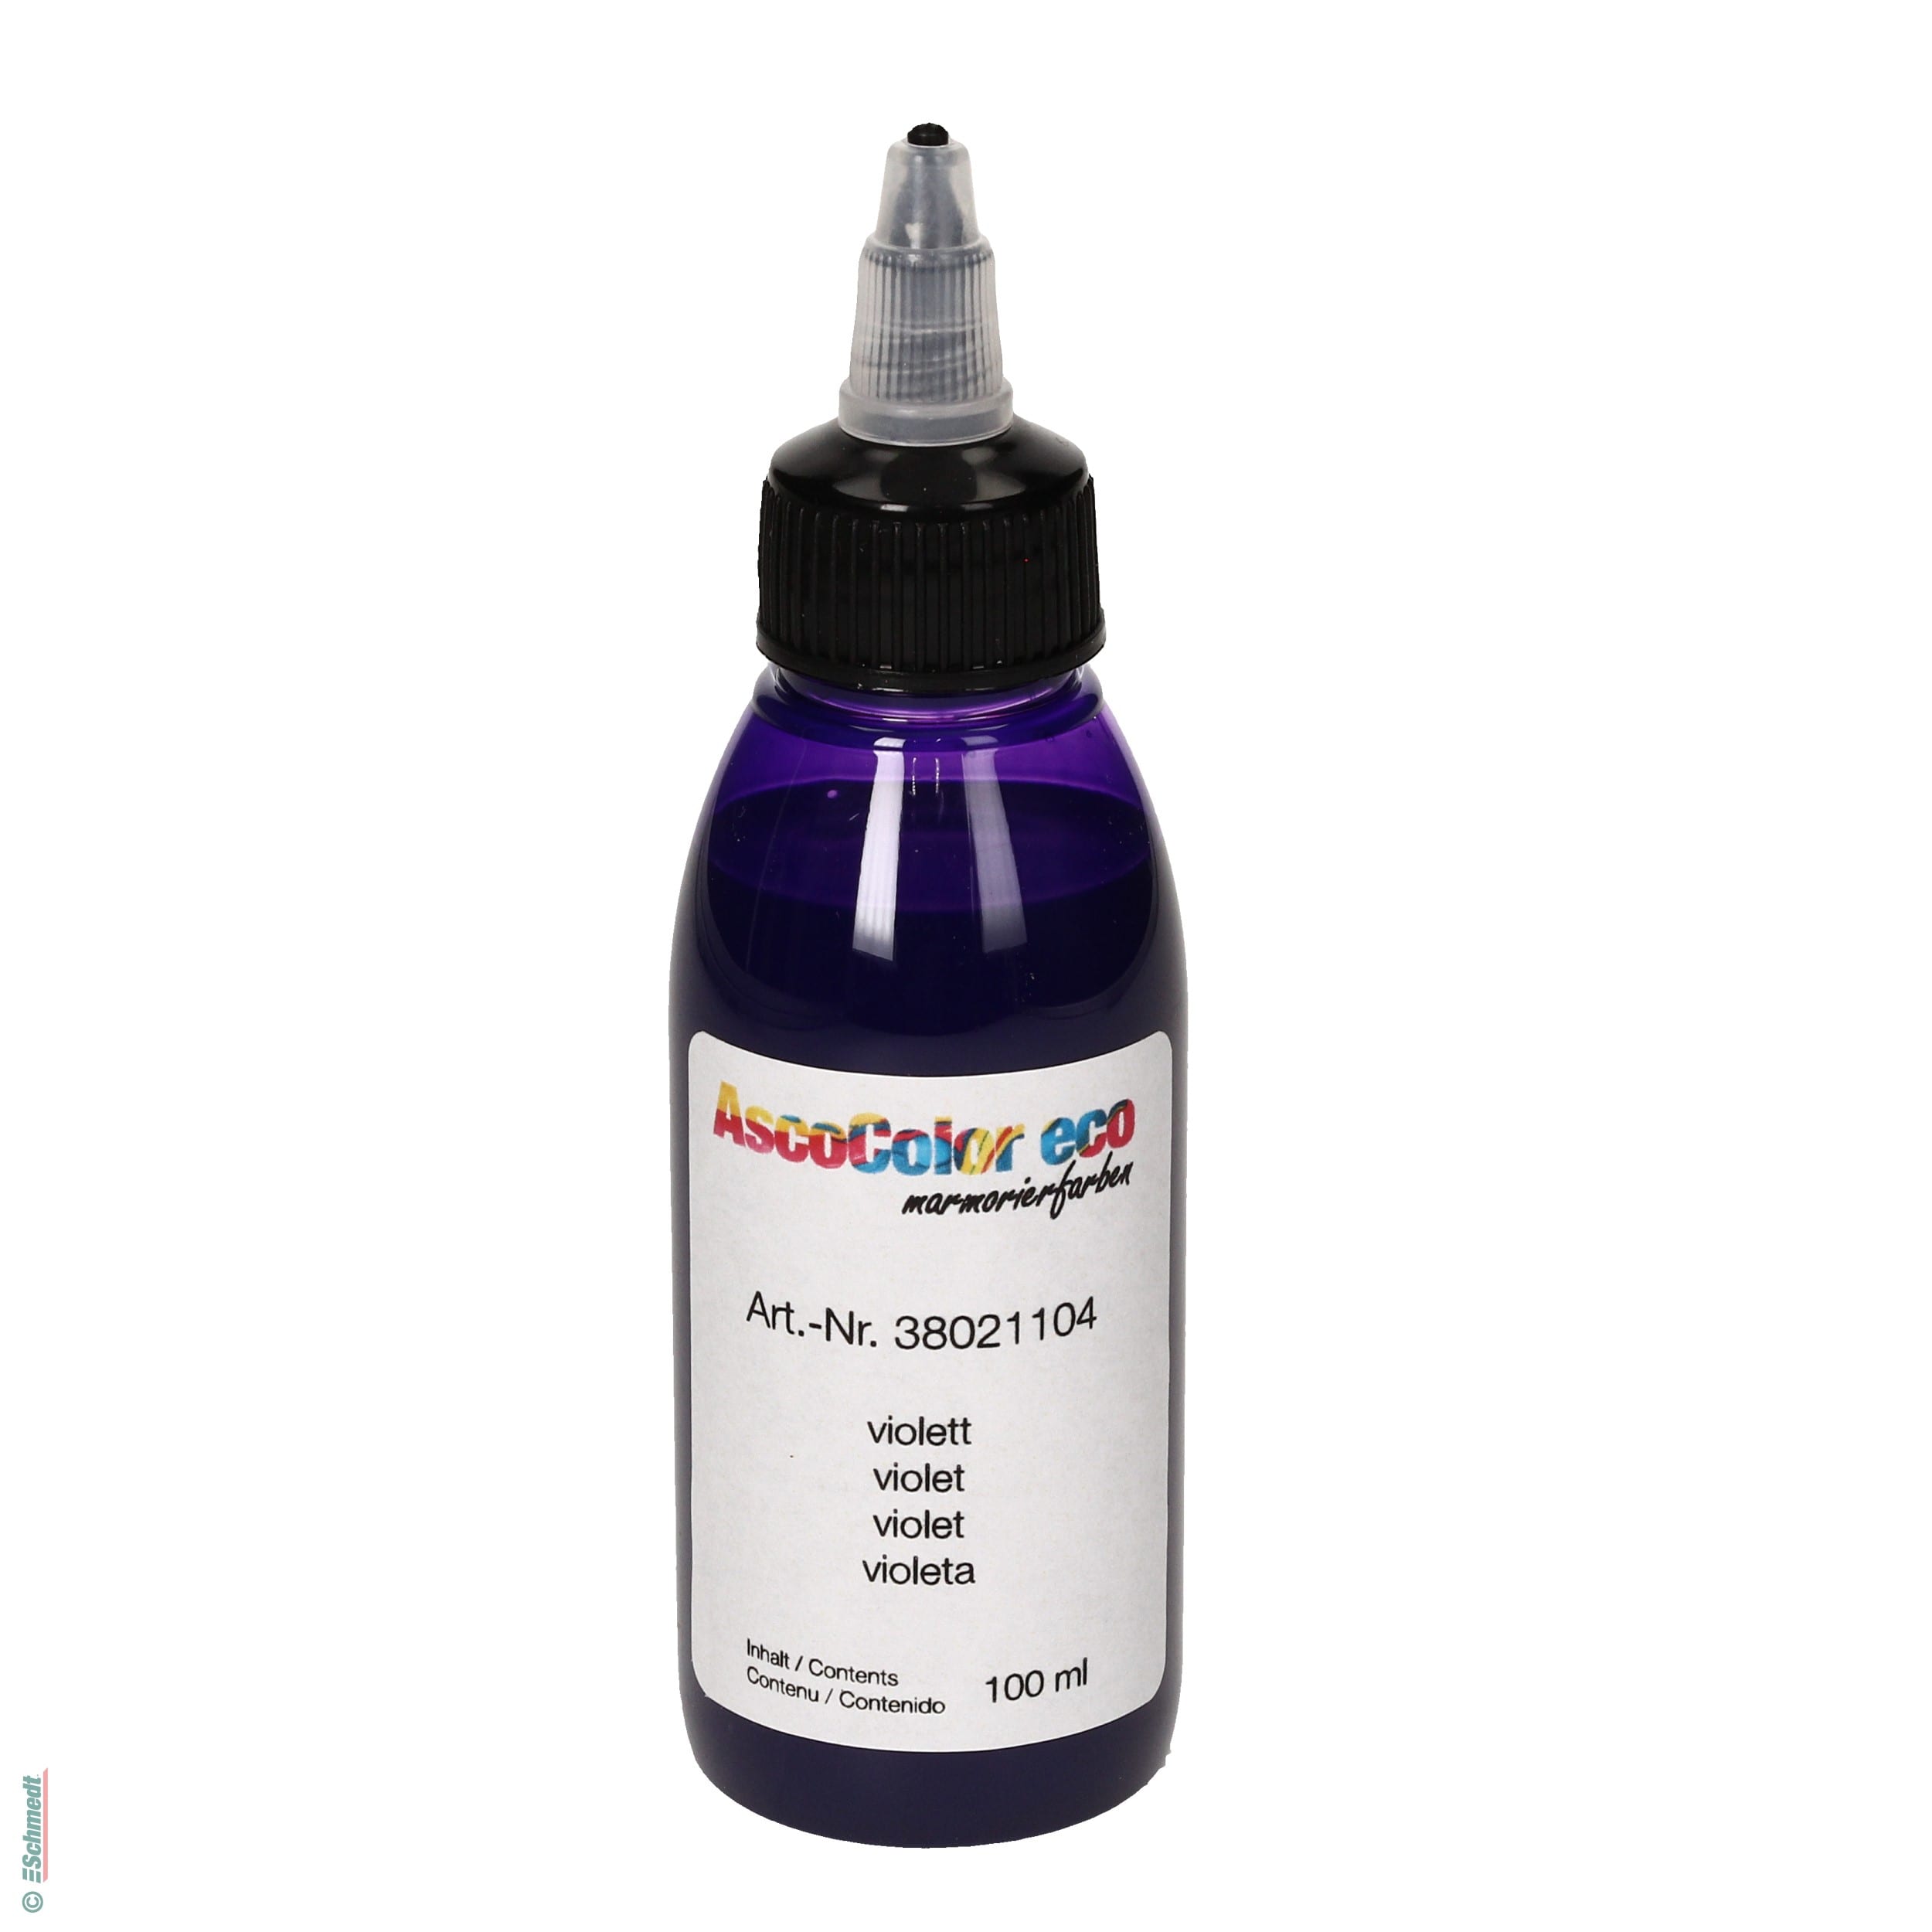 AscoColor eco - Pintura para marmolar - Color 104 - violeta - Contenido Botella / 100 ml - Aplicación: para crear sus propios papeles marmol...